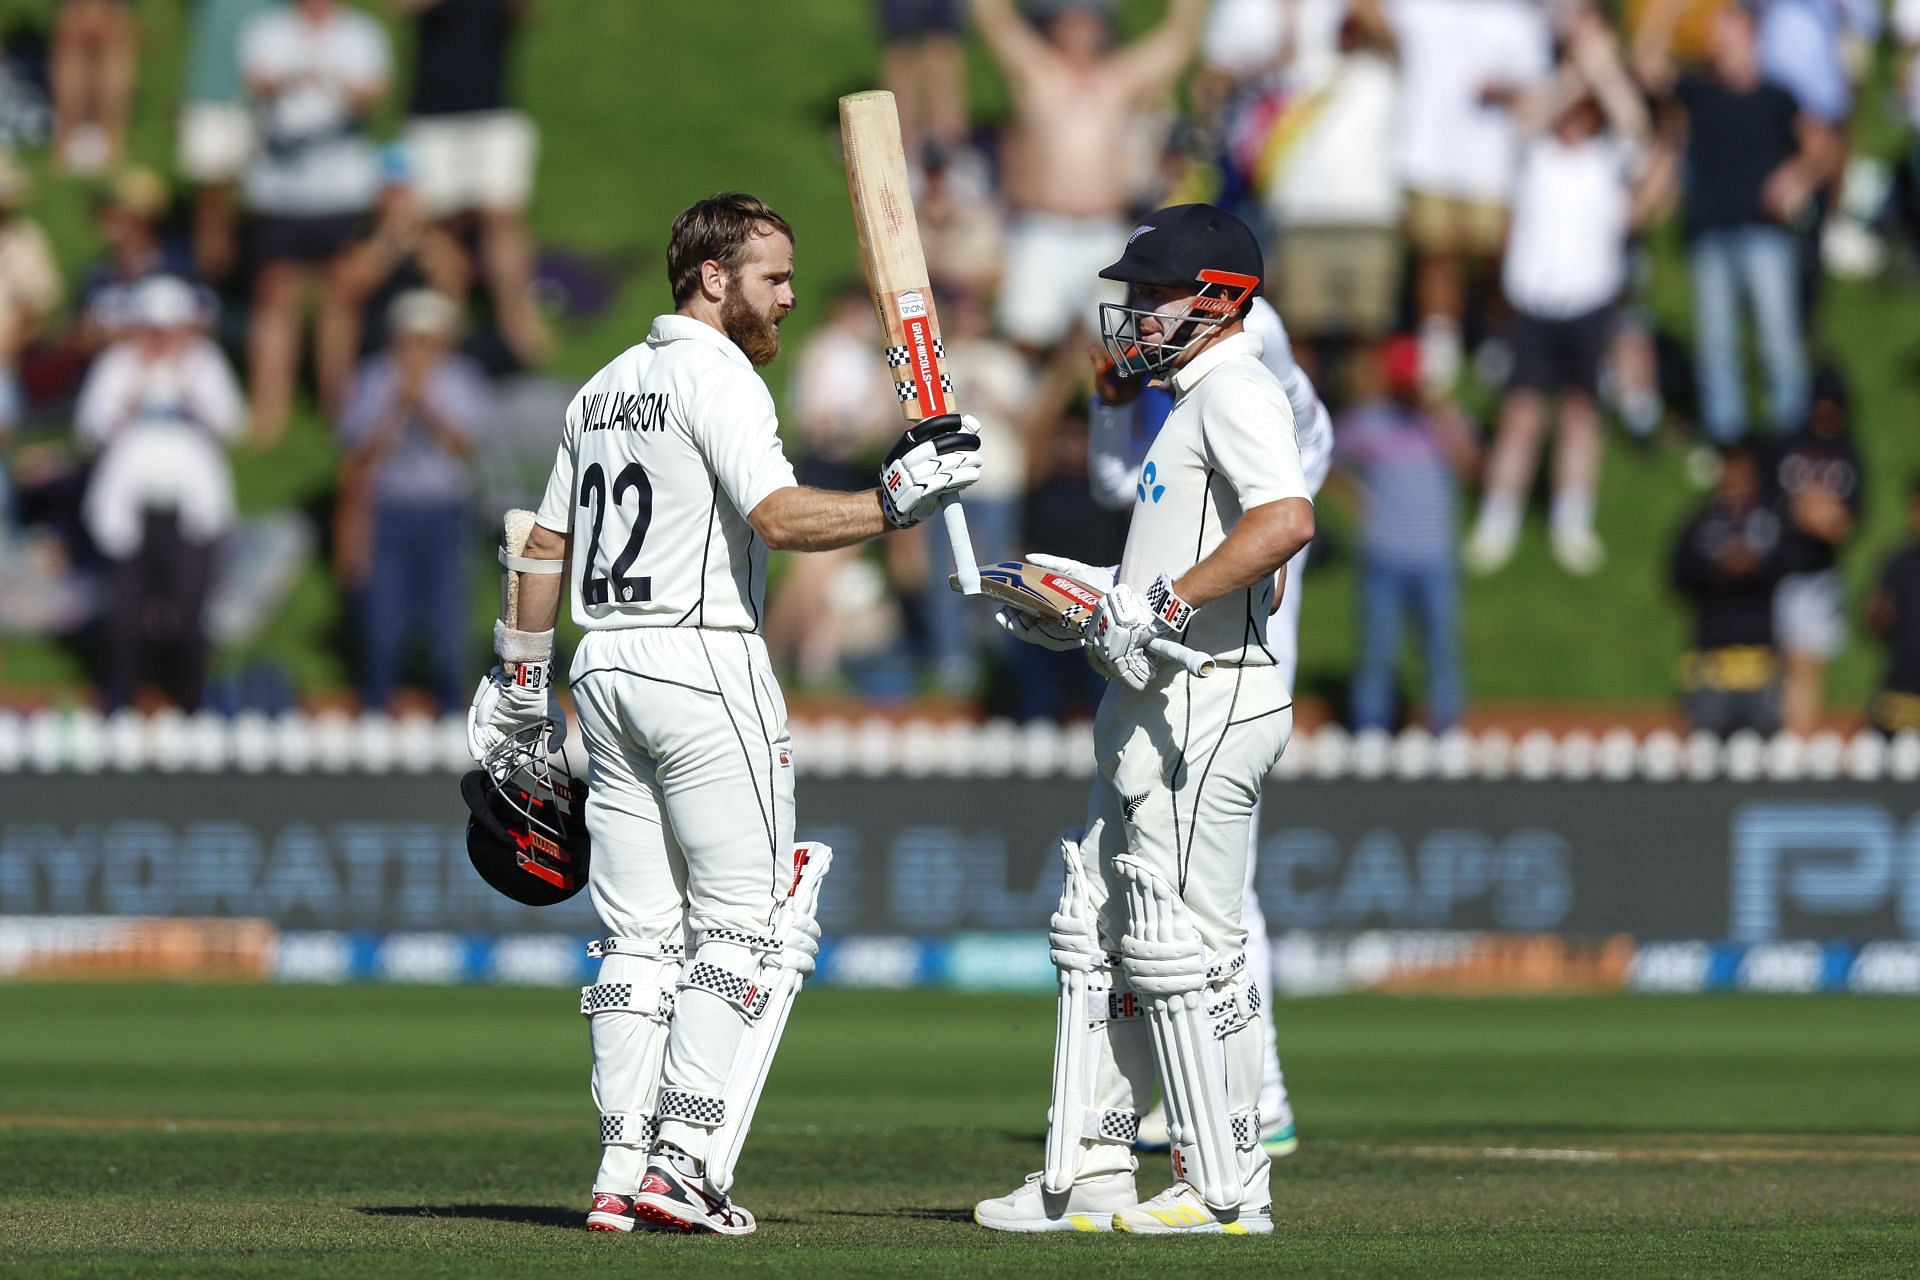 New Zealand v Sri Lanka - 2nd Test: Day 2